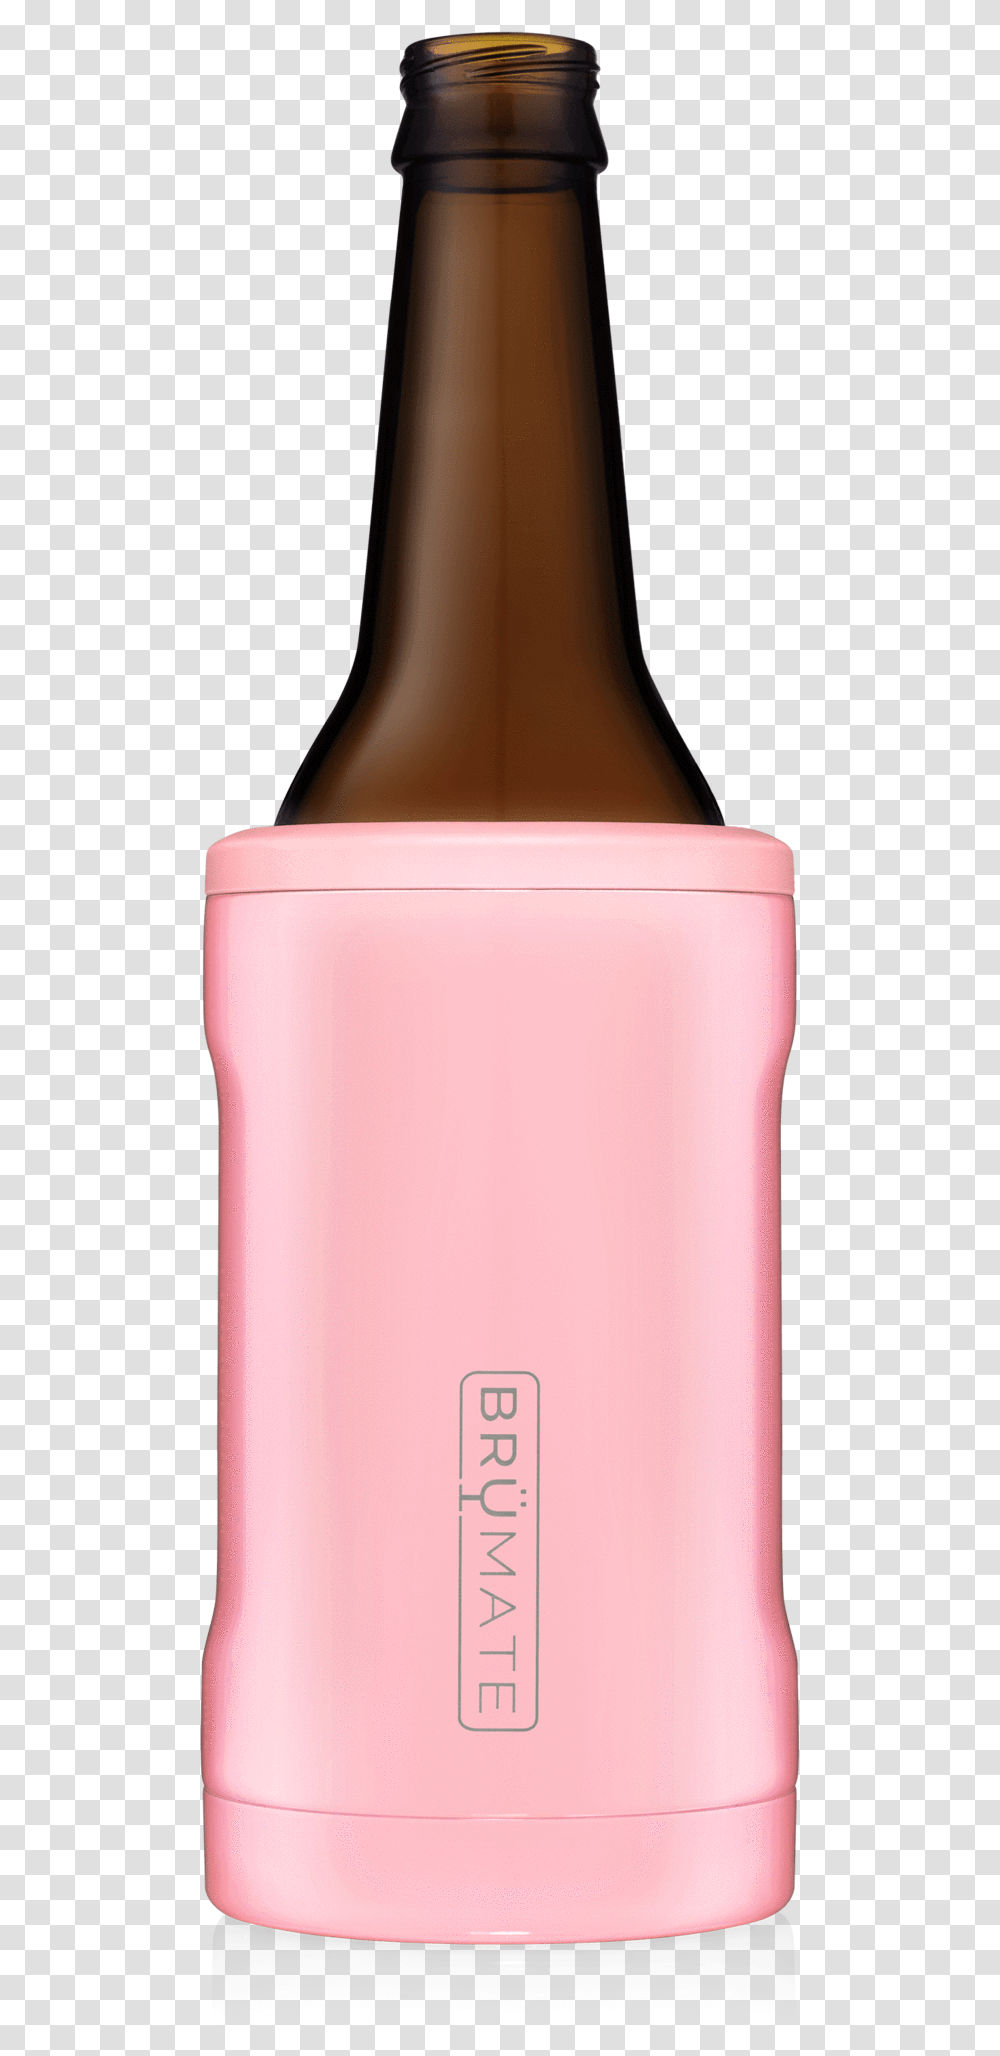 Brmate Hopsulator Bott39l Bottle Cooler, Alcohol, Beverage, Drink, Cosmetics Transparent Png